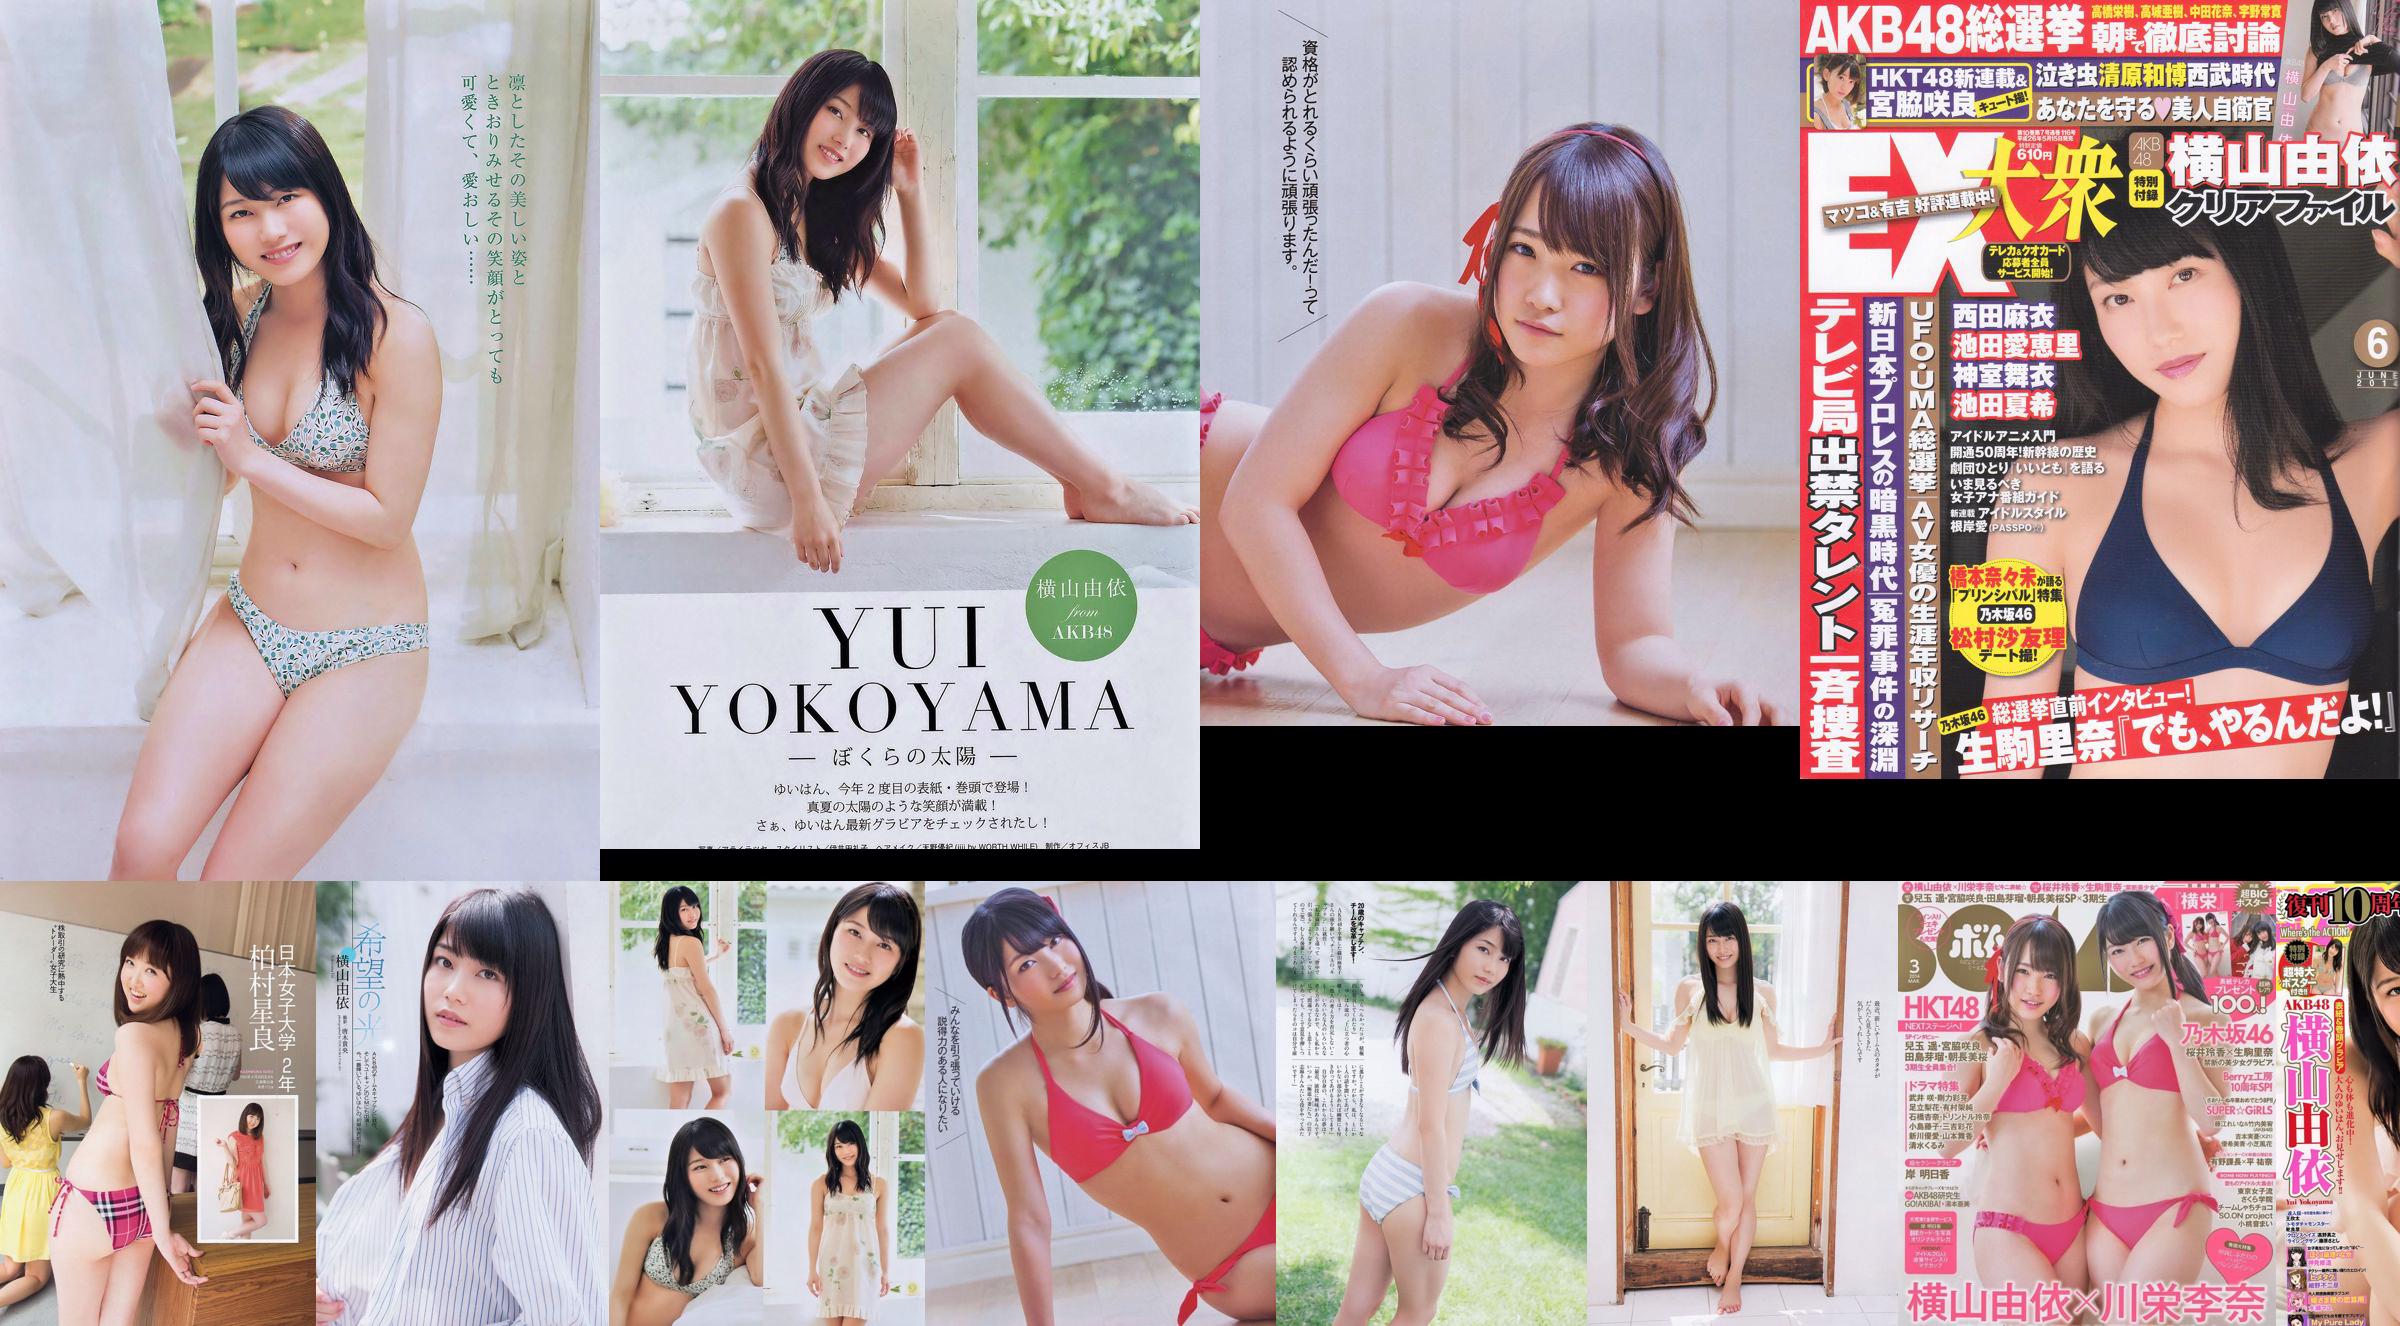 Momoiro Clover Z Yui Yokoyama Yua Shinkawa Mio Uema Anri Sugihara Kumi Yagami [Weekly Playboy] 2013 No.20 Photo Moshi No.729127 Страница 1